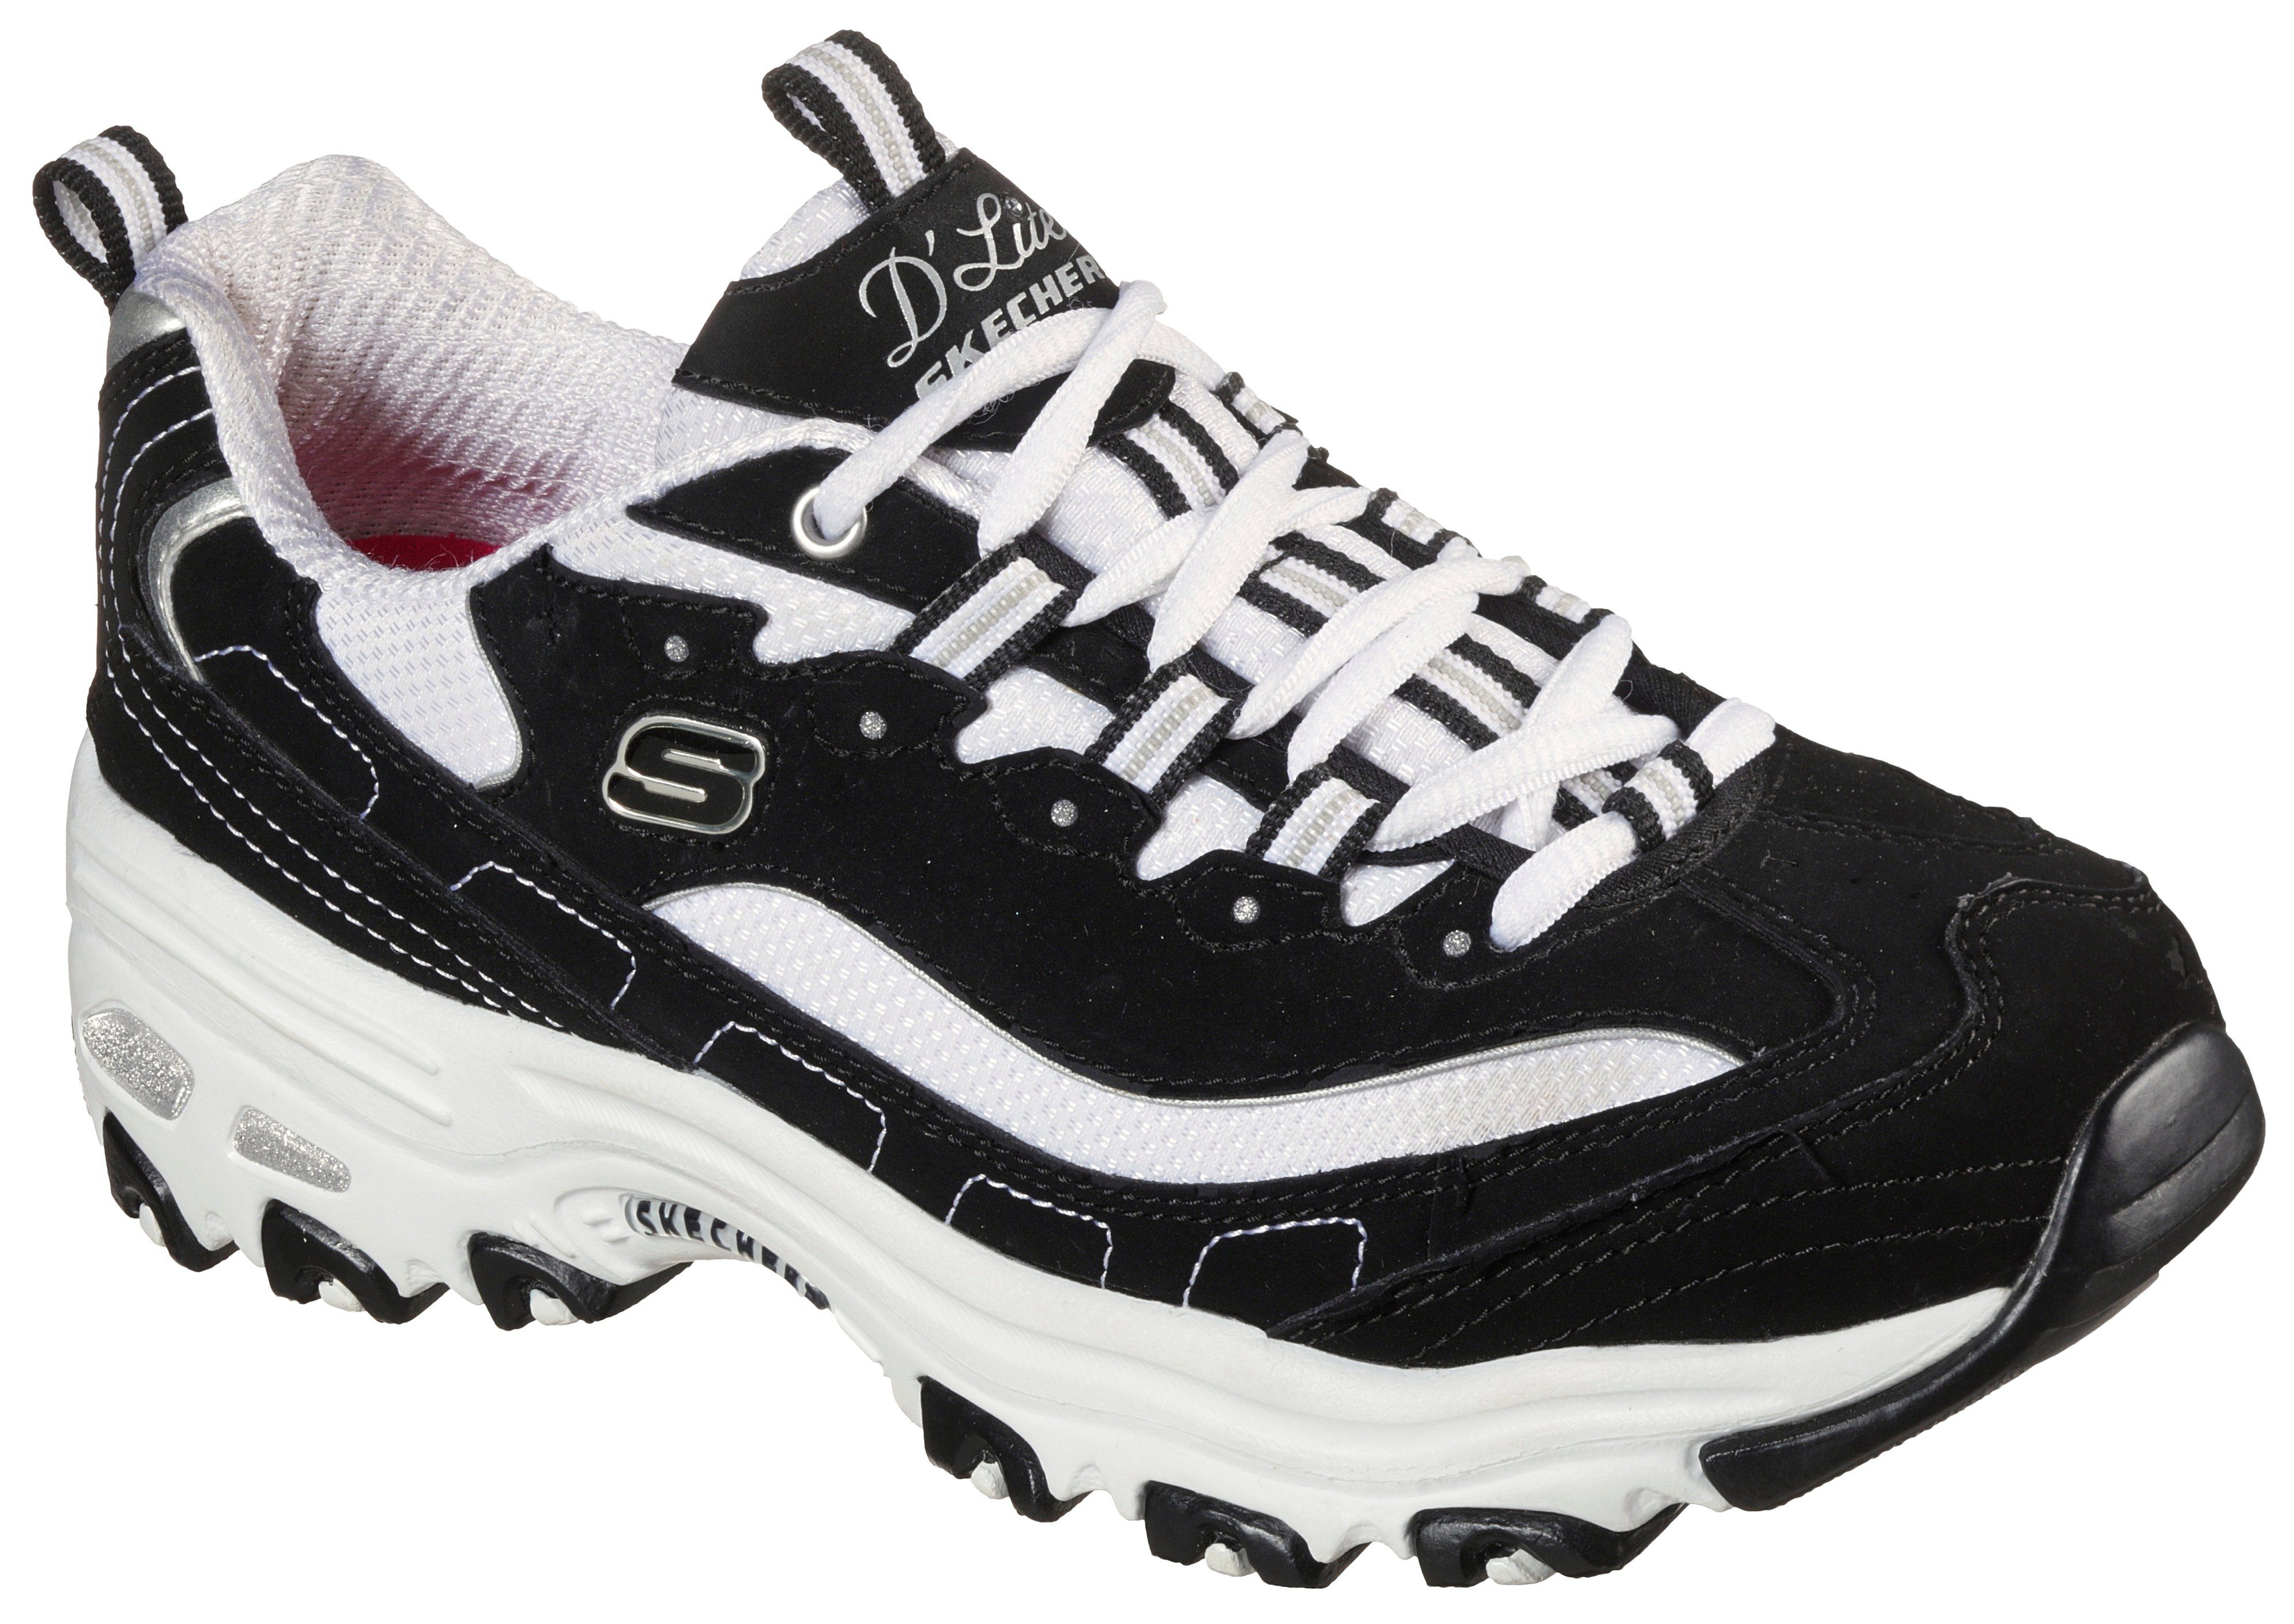 Skechers »D'LITES - BIGGEST FAN« Sneaker in komfortabler Schuhweite G (weit)  online kaufen | OTTO